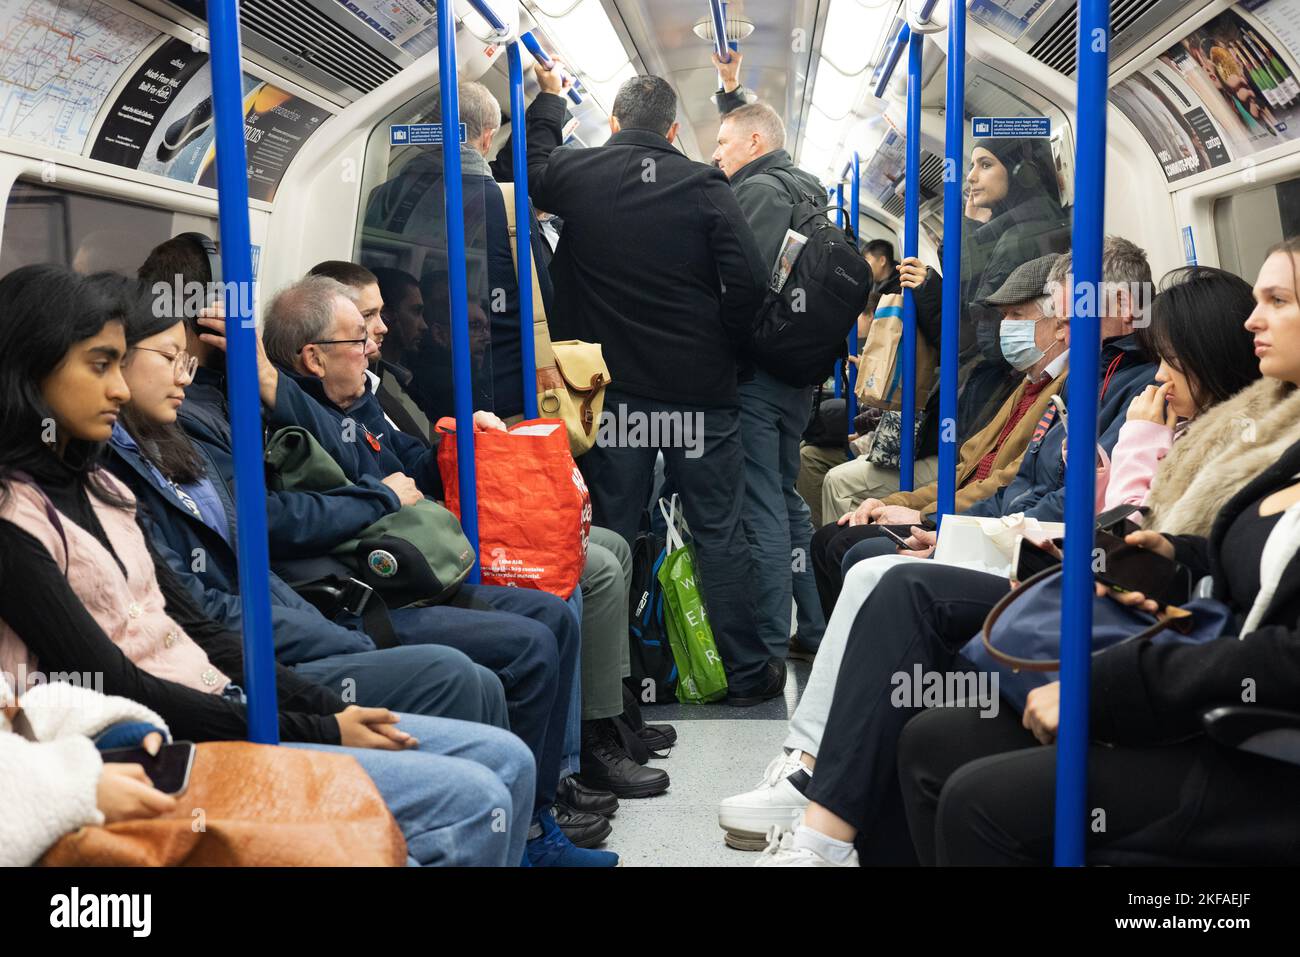 Affollato treno della metropolitana di Londra, passeggeri in piedi all'interno della carrozza della metropolitana, Piccadilly Line, trasporto pubblico TFL, Londra UK Foto Stock